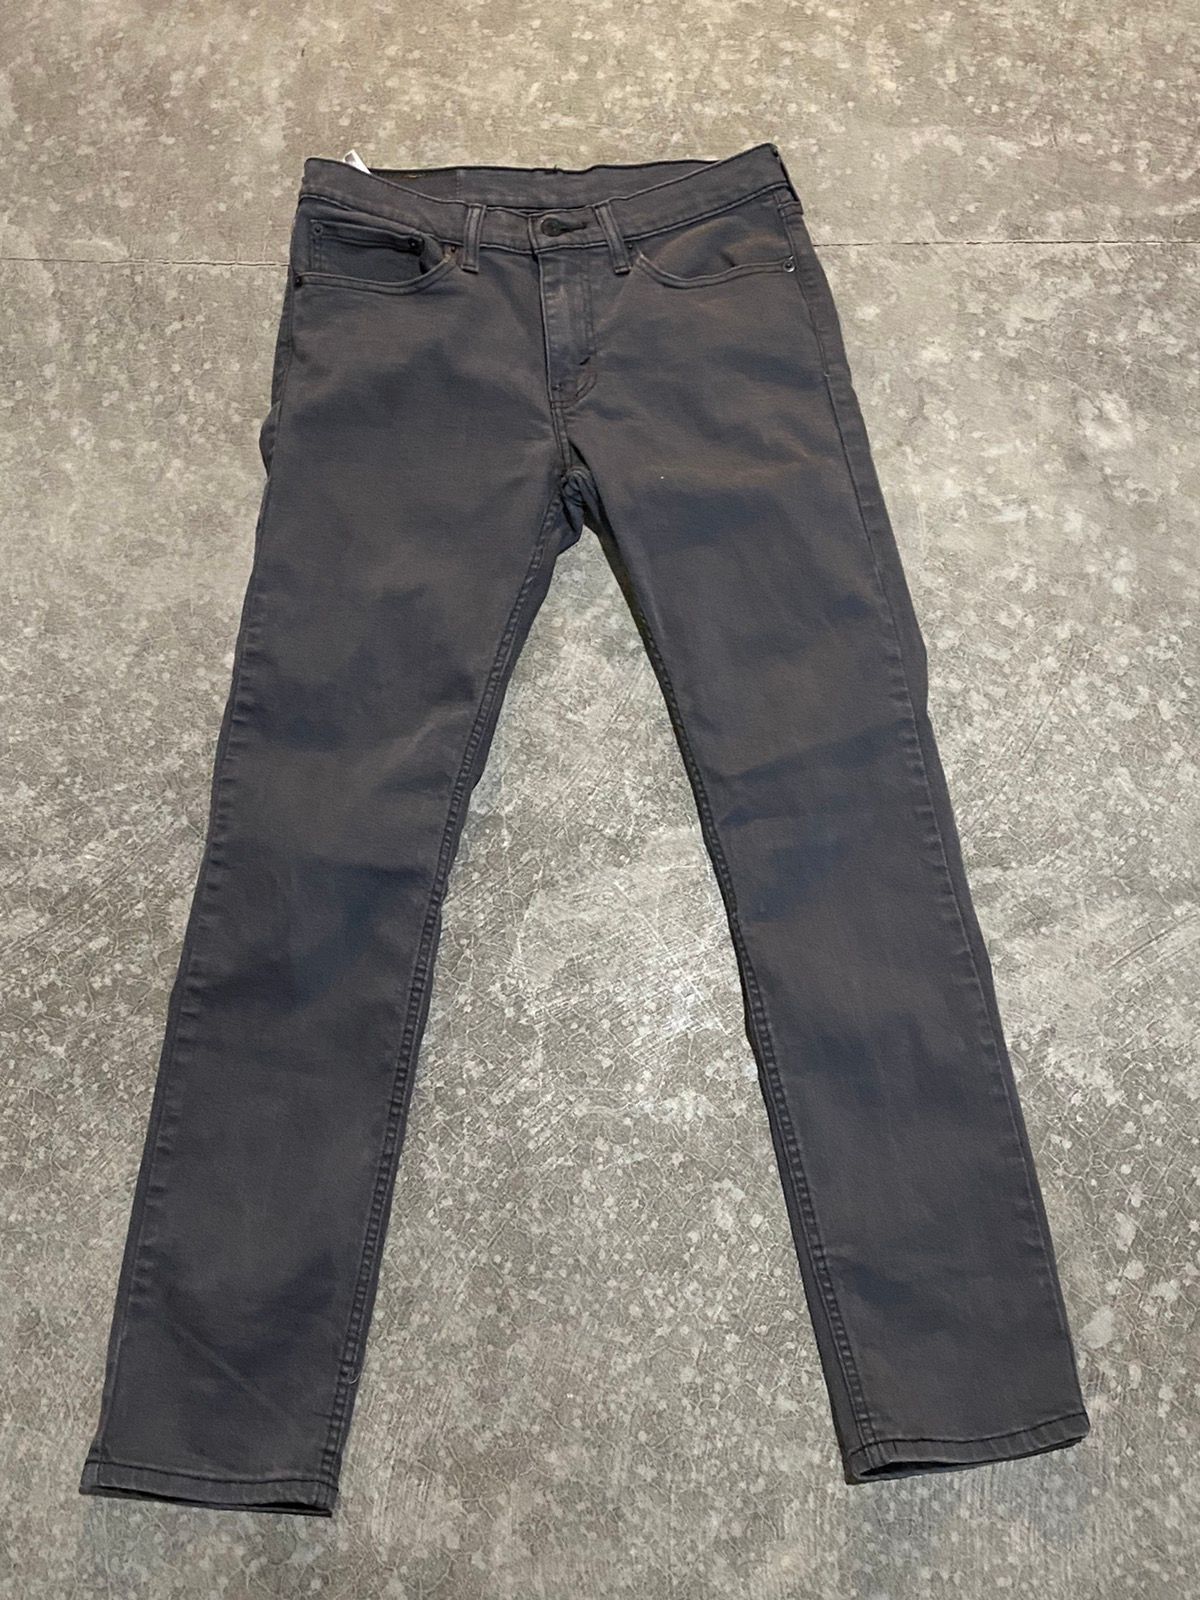 Vintage Grey Levi 511 Jeans 31x32 Size US 31 - 1 Preview